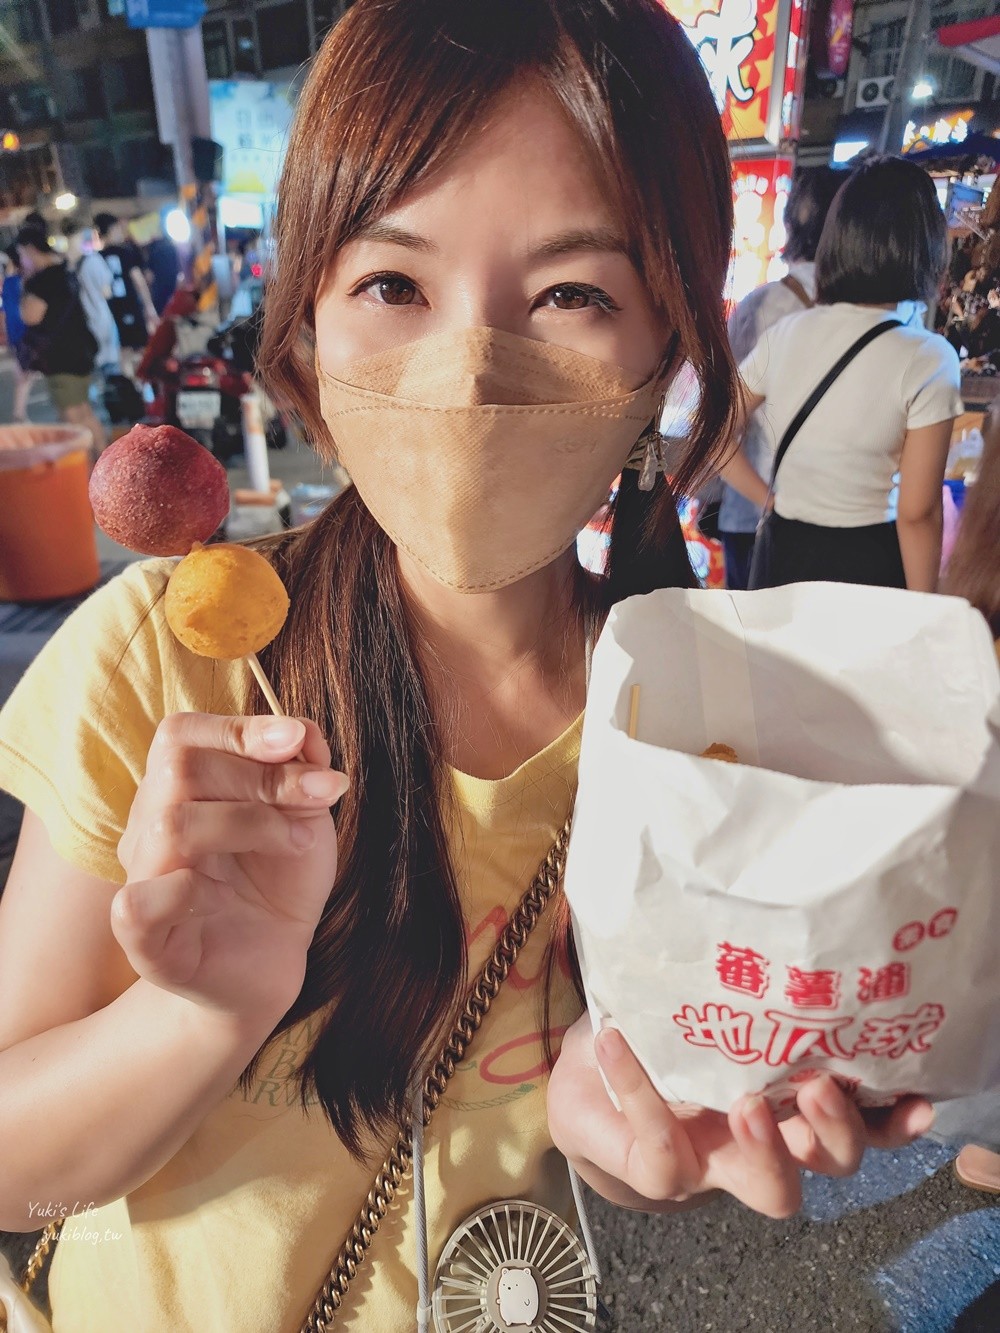 台南武聖夜市美食吃一圈，週三週六逛起來，吃的玩的都有哦～ - yukiblog.tw